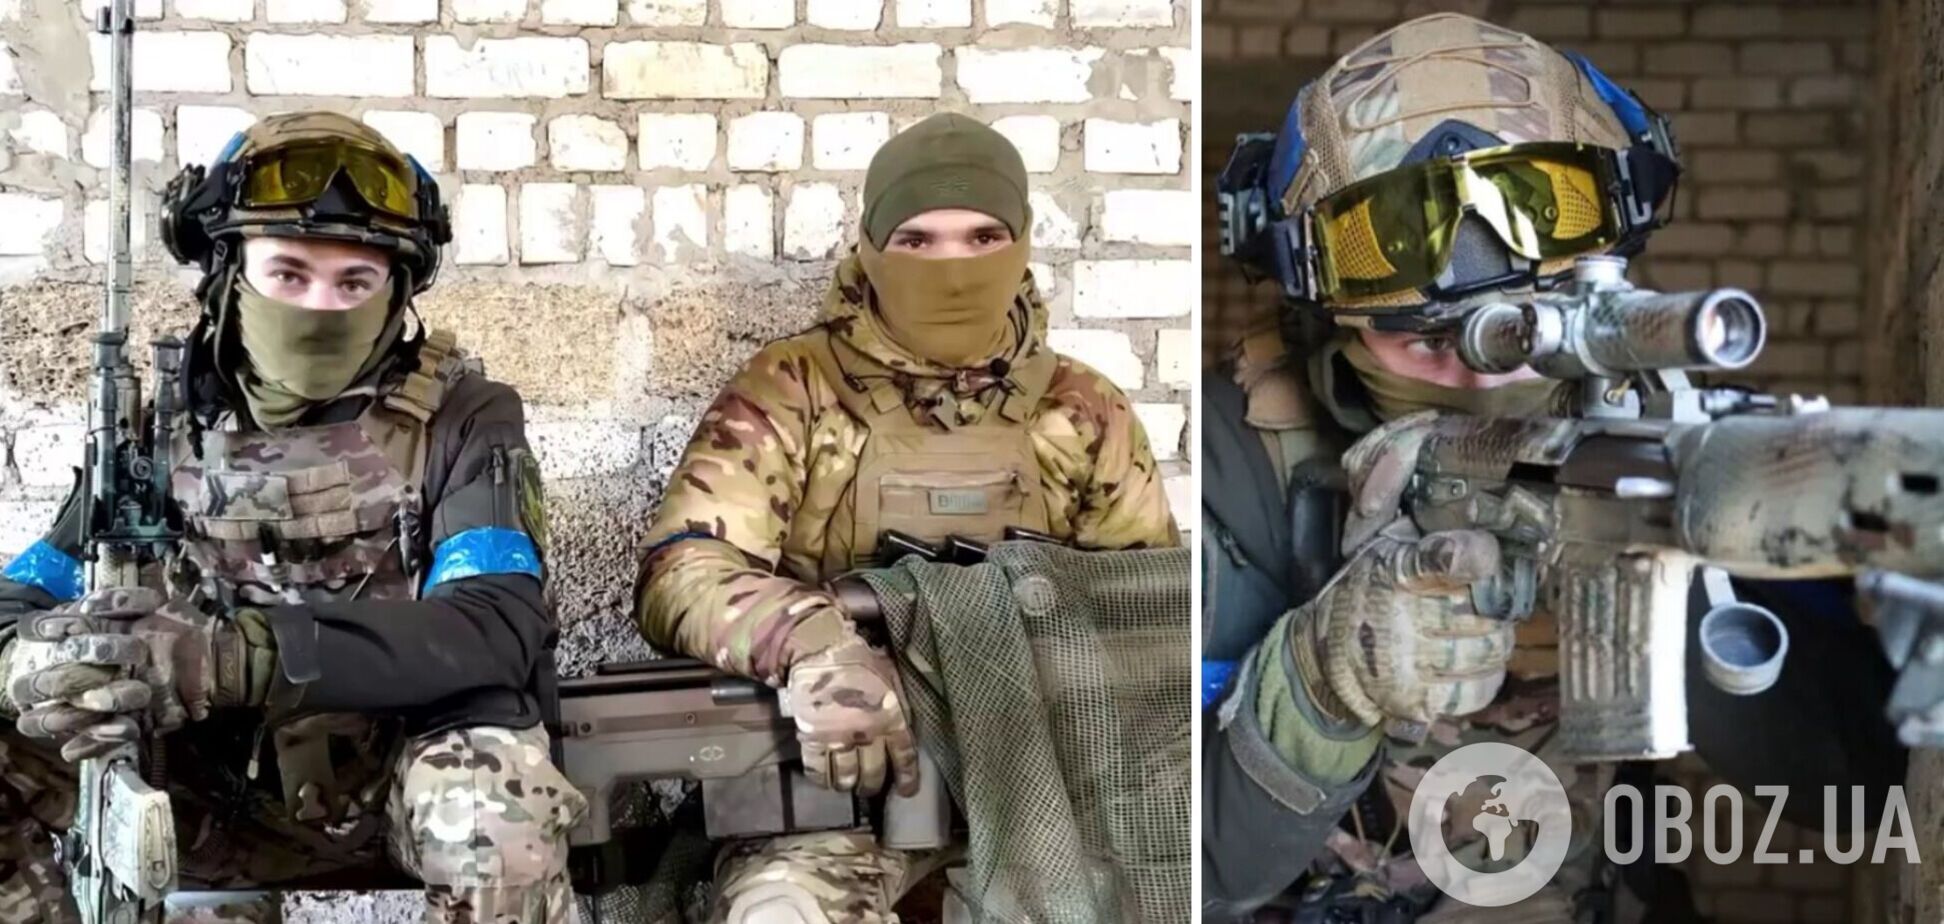 Украинские снайперы 'Опер' и 'Кузя' показали, как вместе охотятся на оккупантов: видео